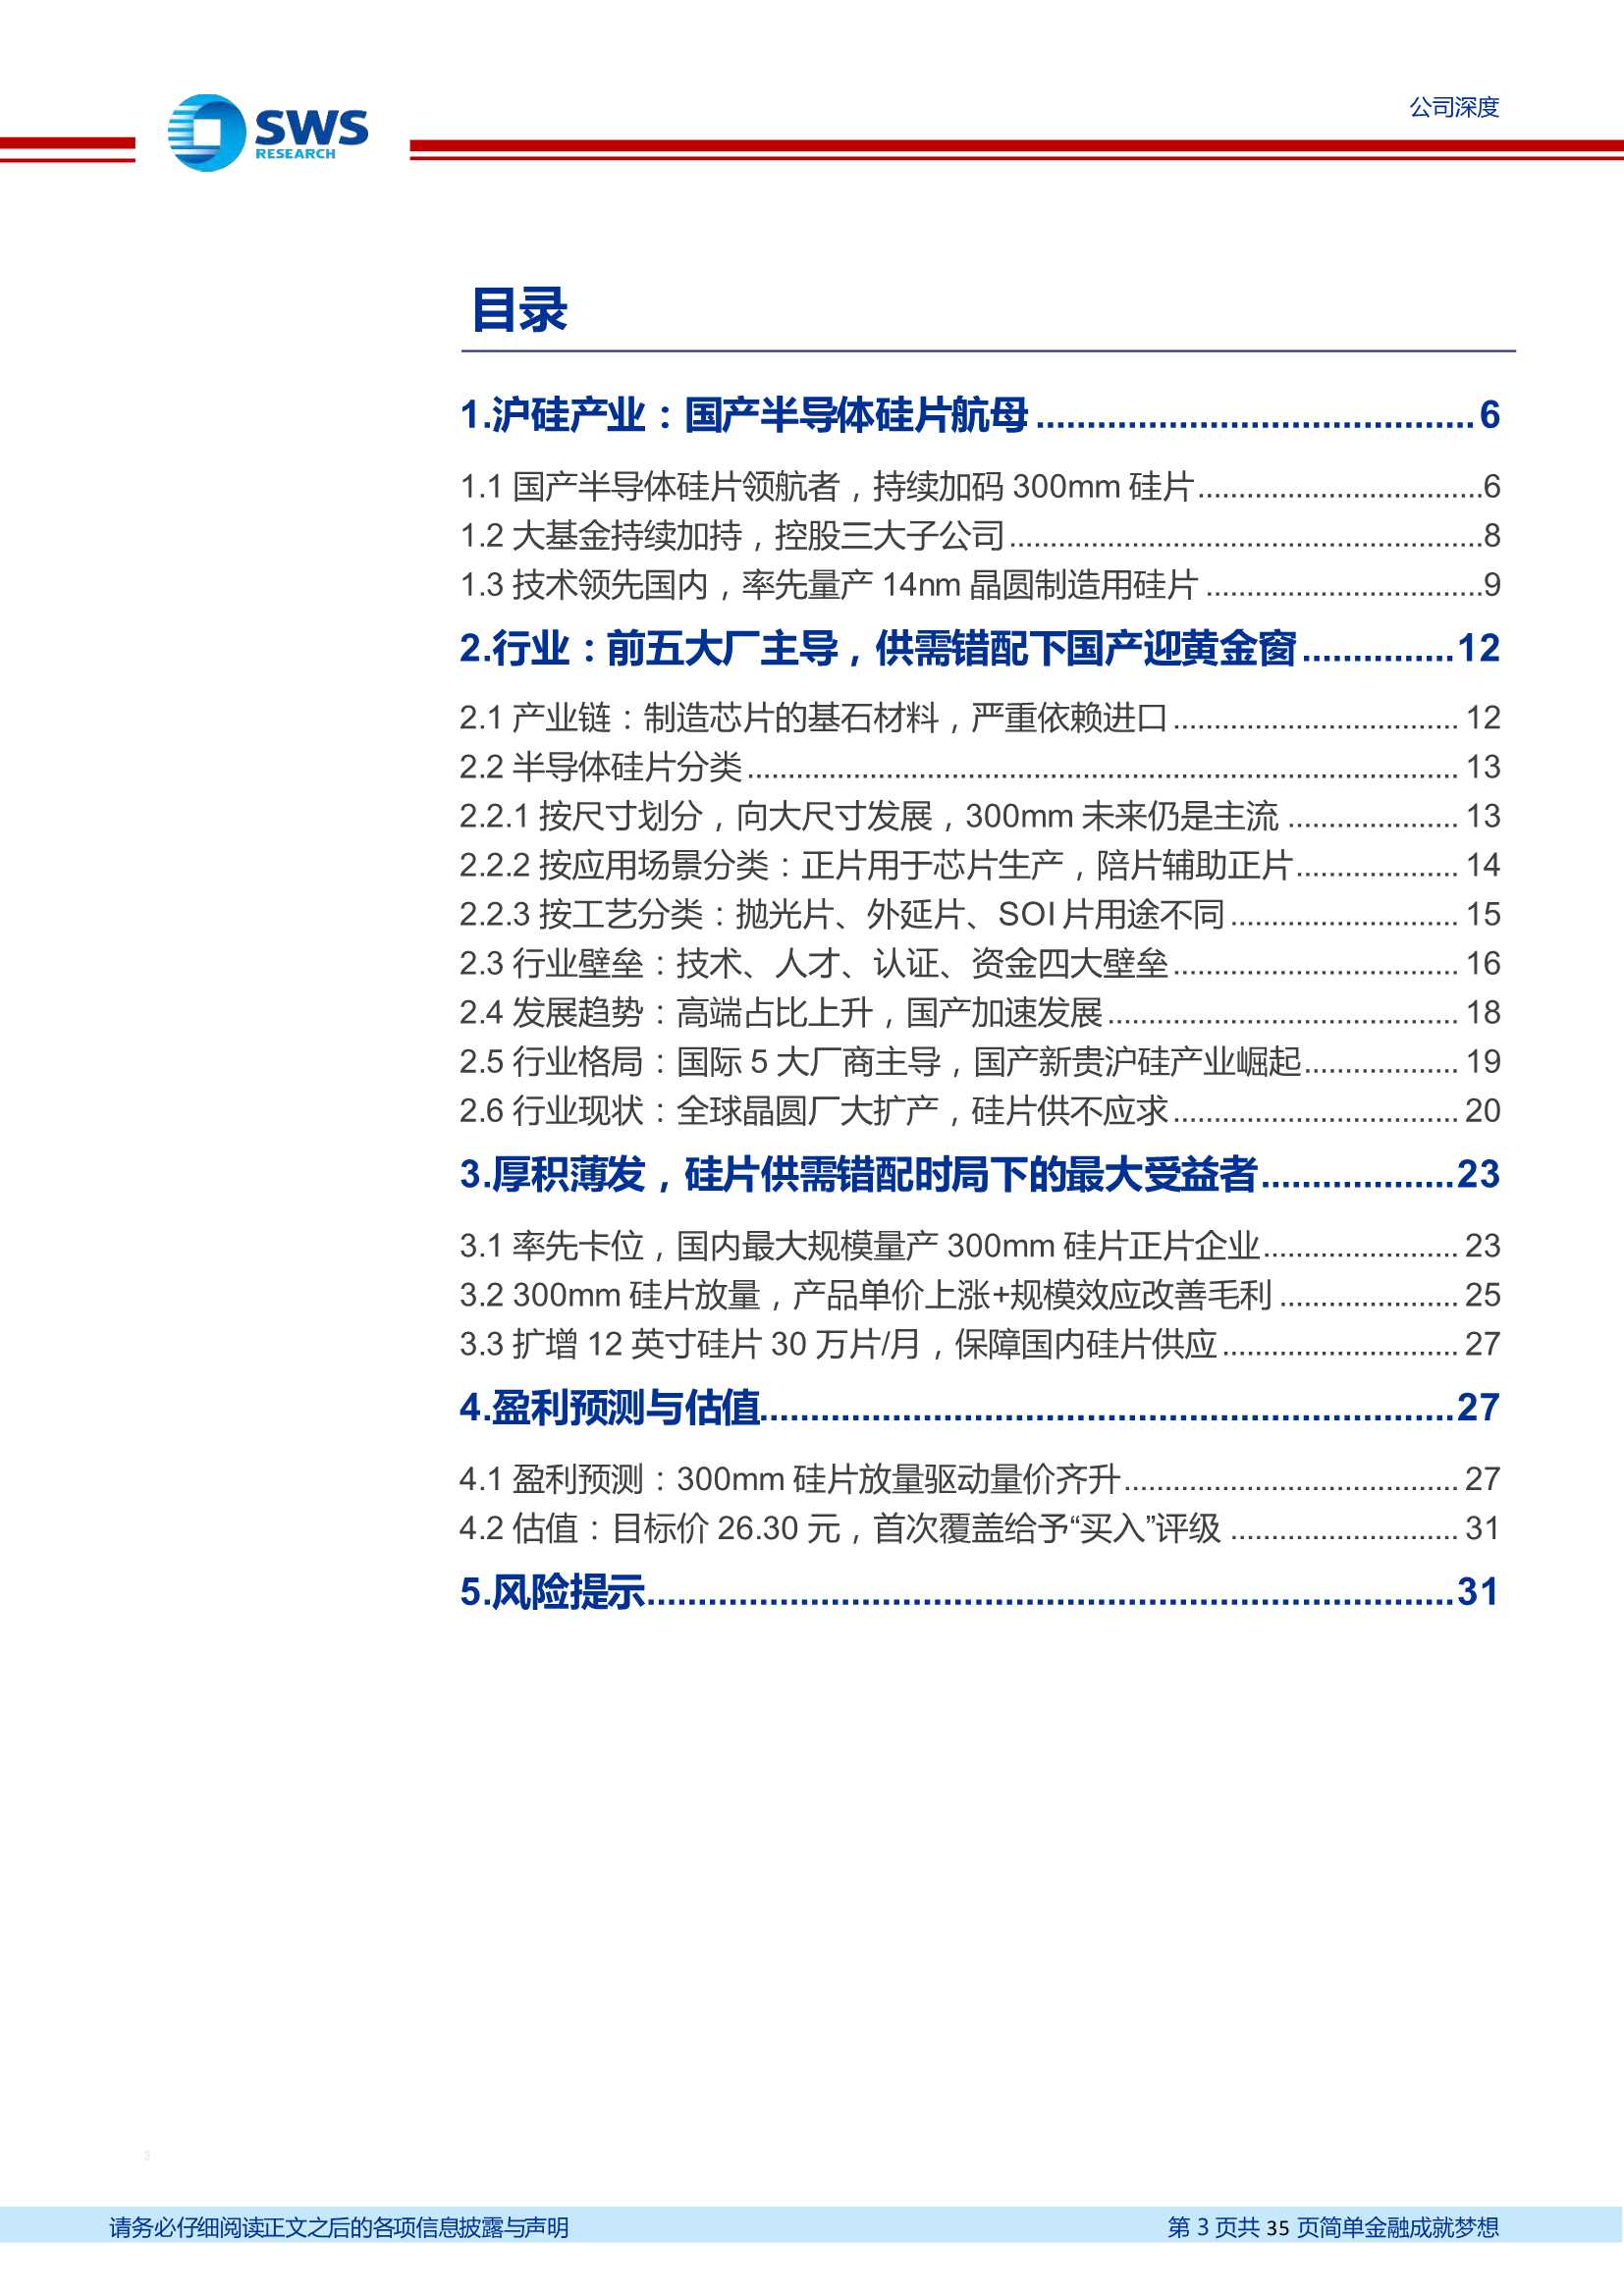 沪硅产业-688126-国产半导体硅片航母，12英寸硅片放量释放弹性-20220428-申万宏源-35页